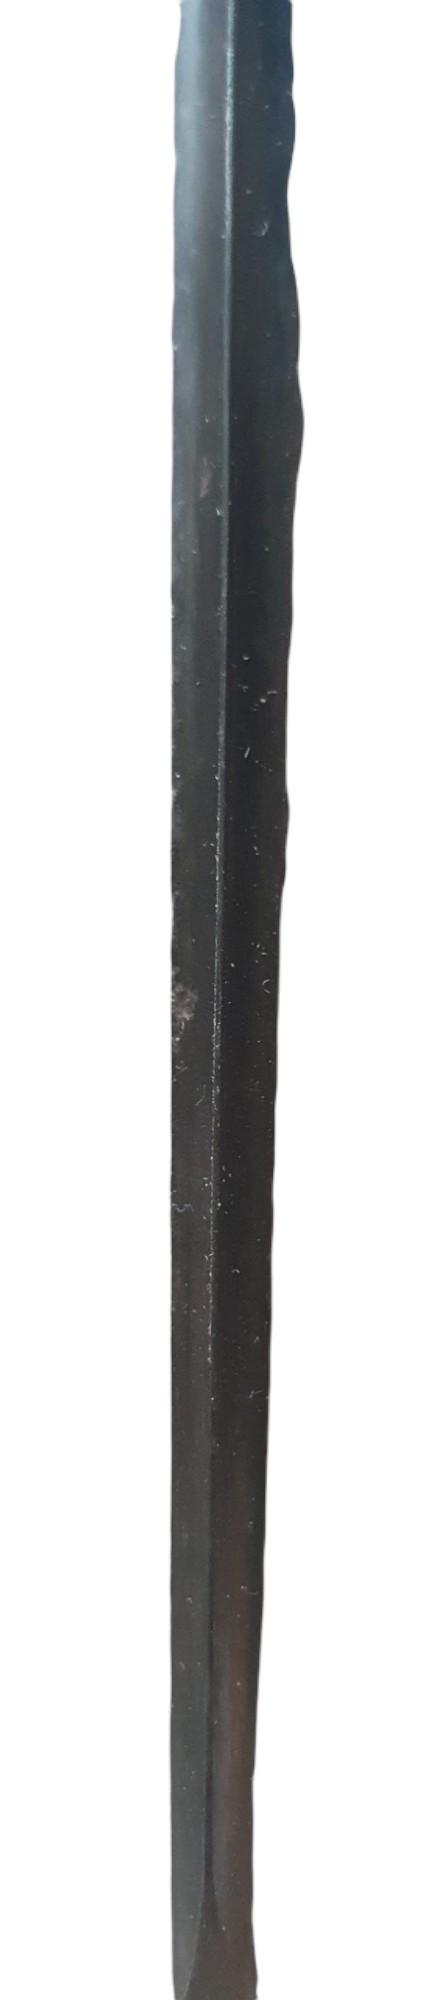 A russian mosin nagant bayonet